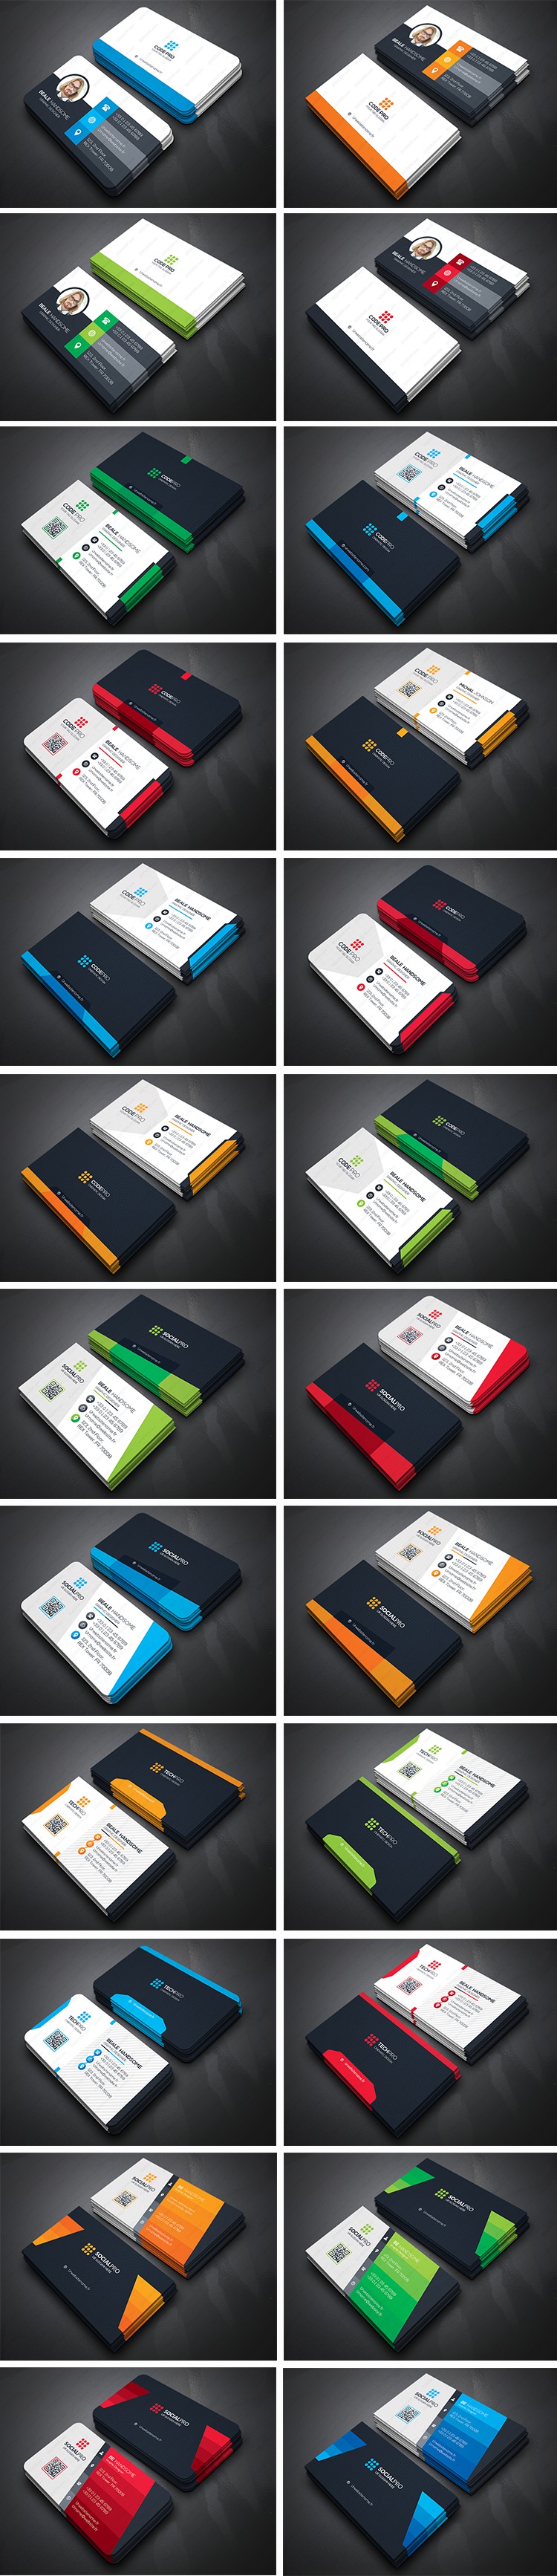 高端简洁大气商用企业名片模版四种配色PSD分层设计素材 图片素材 第2张